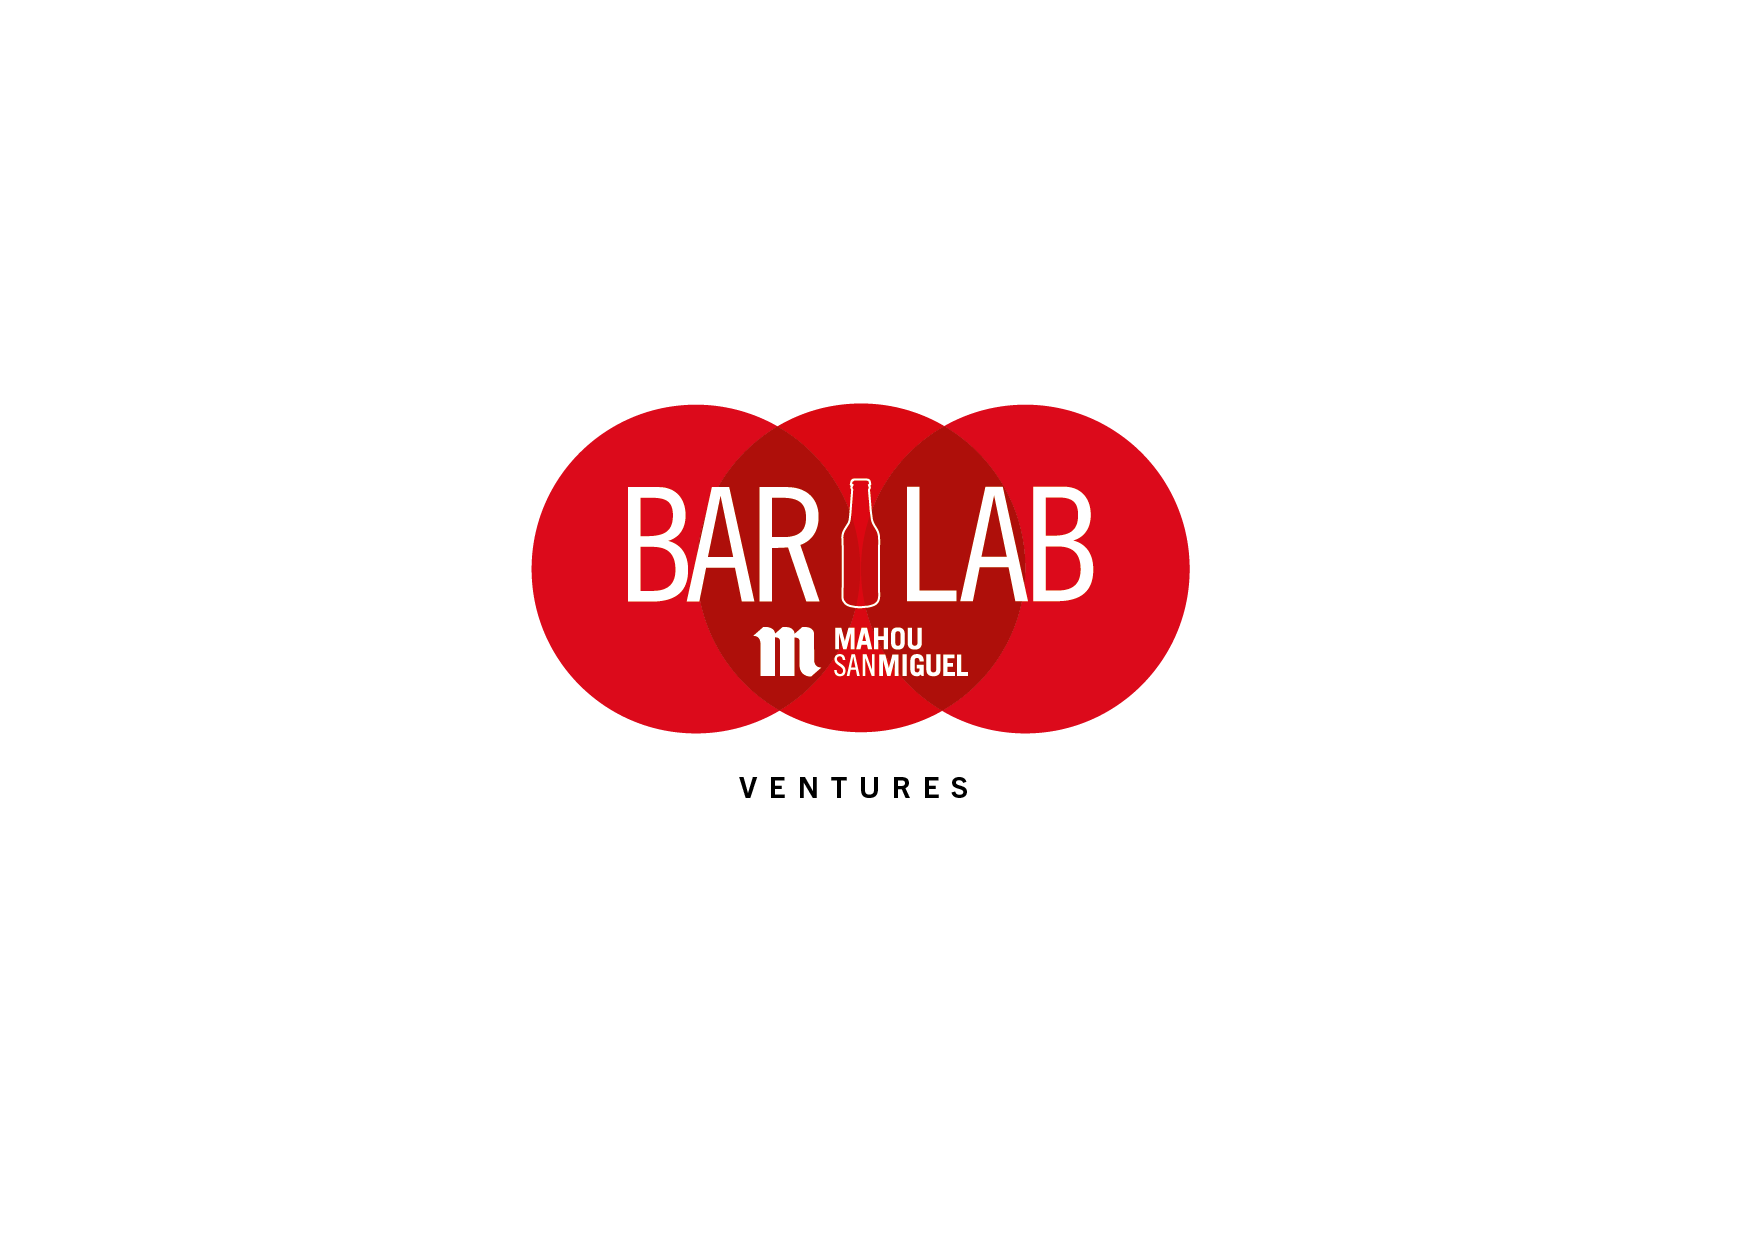 BarLab Ventures